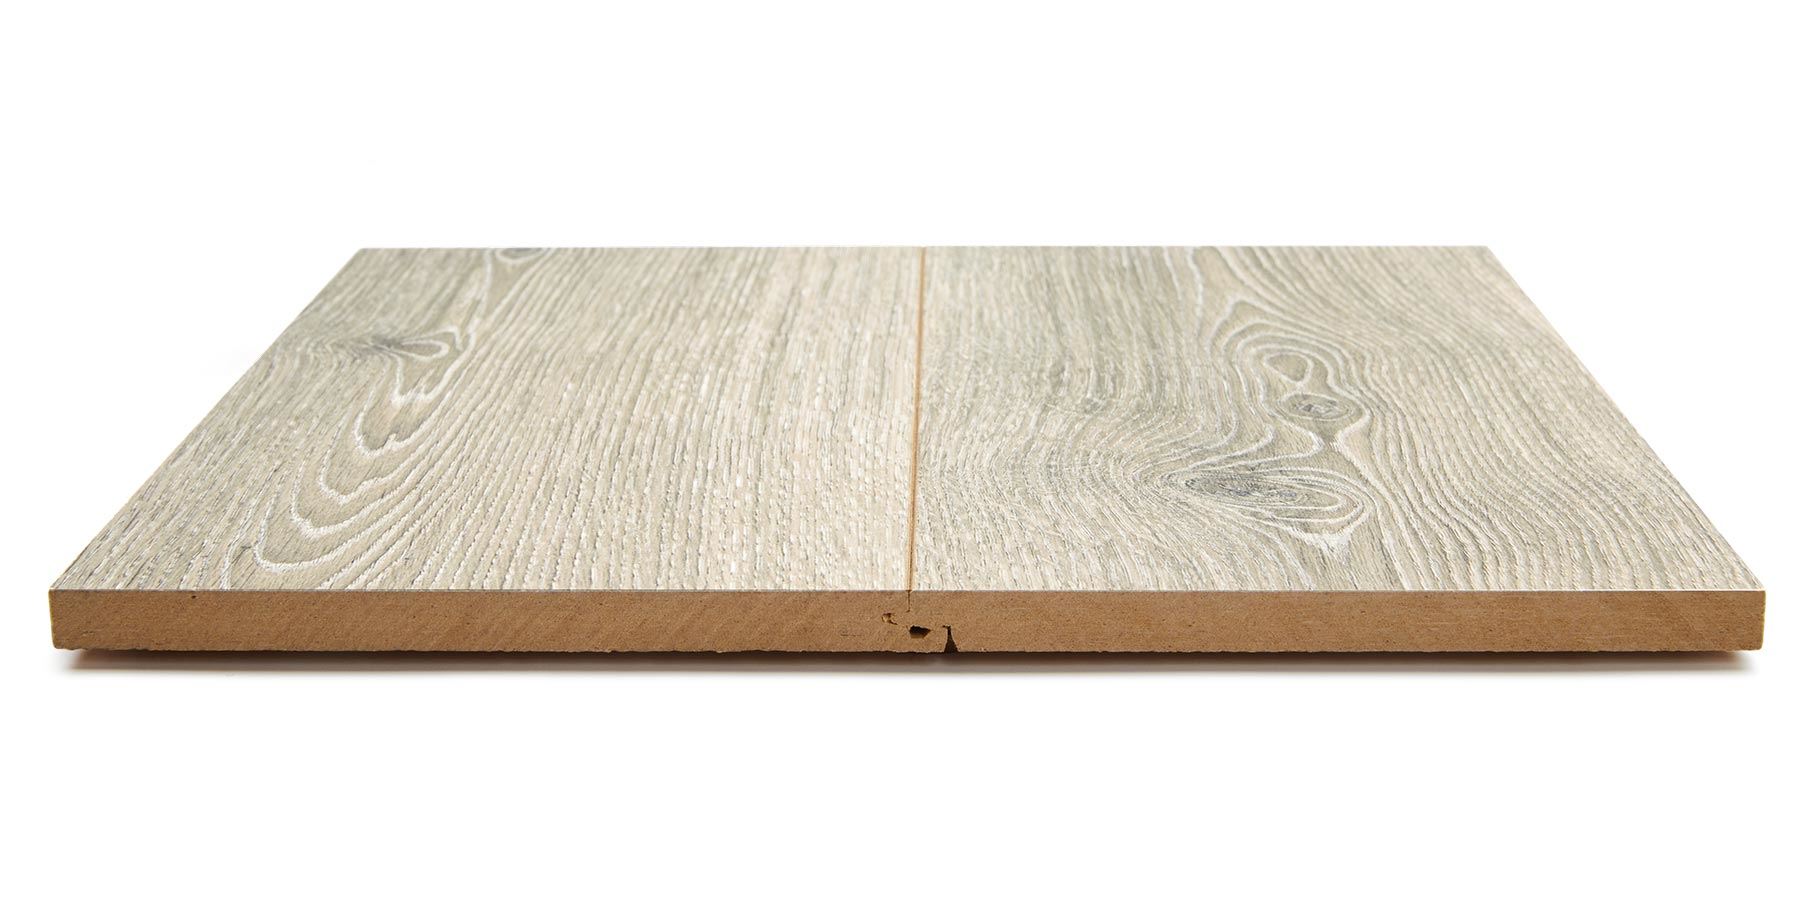 Oceanside Wood Laminate Flooring